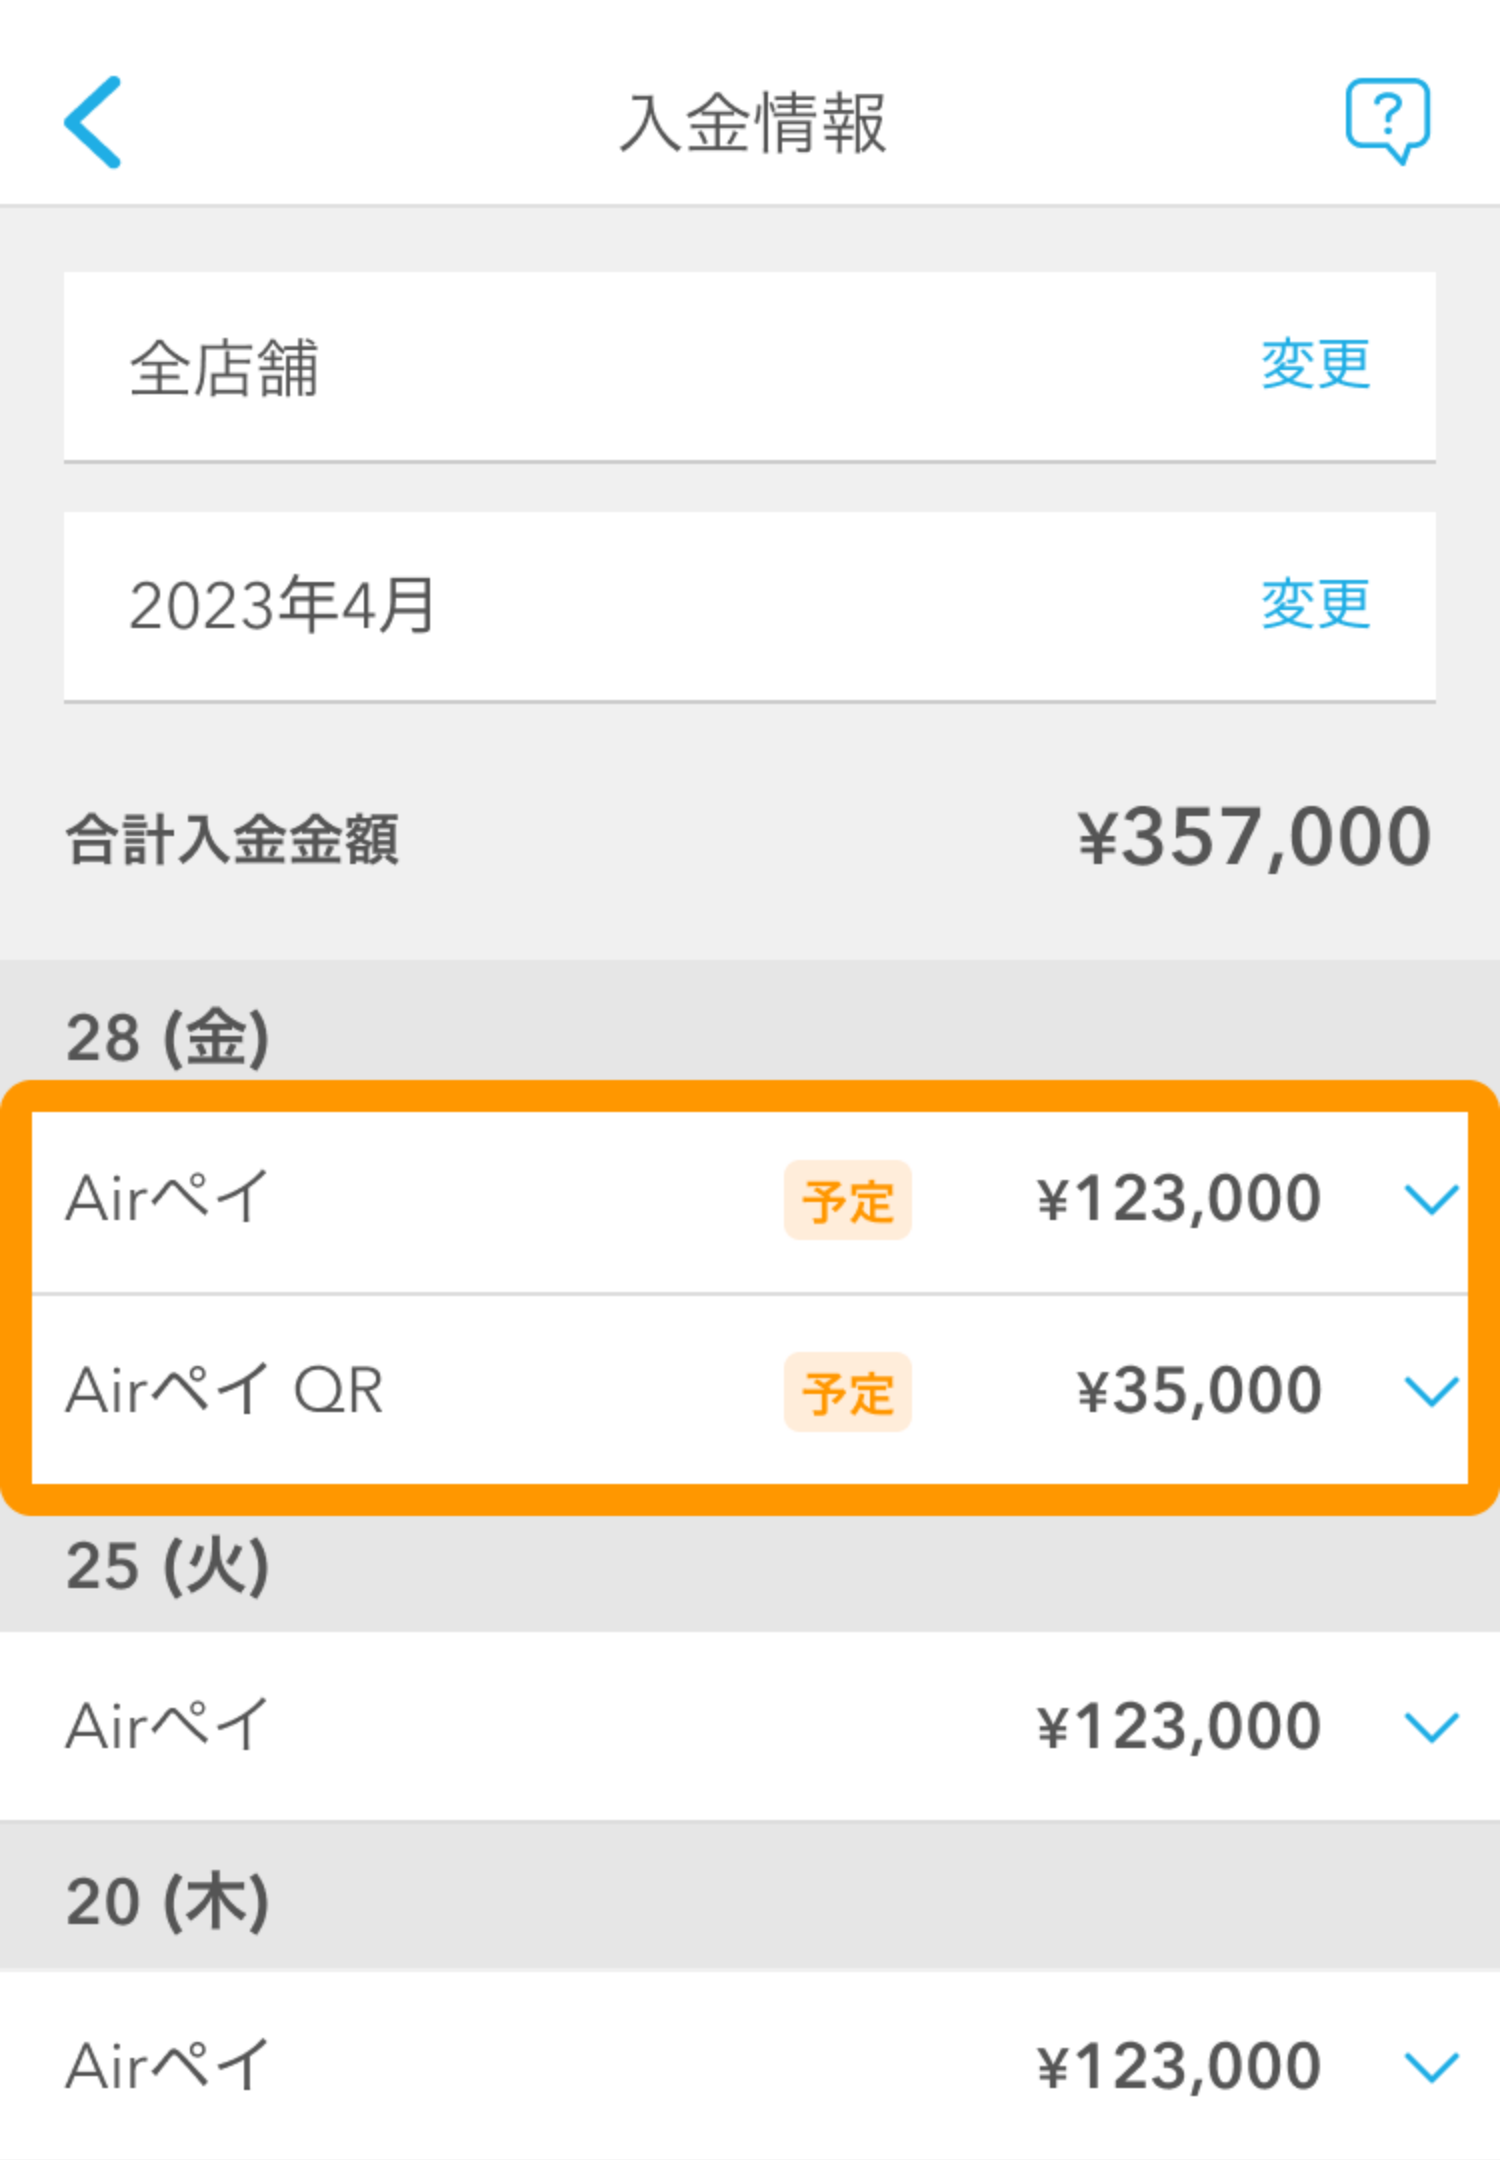 02 Airメイト アプリ 入金情報